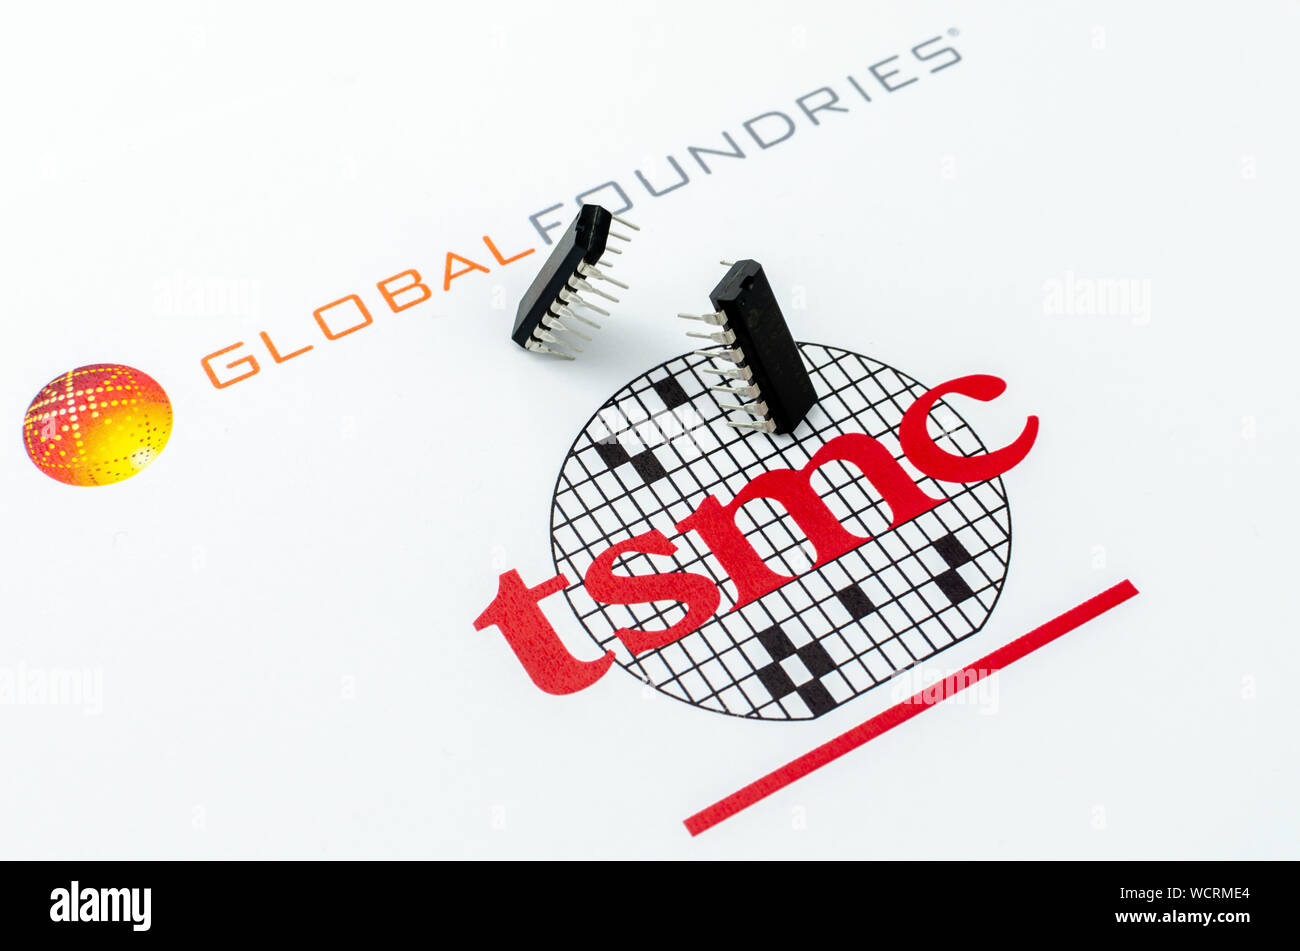 Fundiciones global vs. TSMC. Imprimir logotipos de empresas de semiconductores y dos chips, uno para atacar y otro para defender su posición. Fotografía conceptual. Foto de stock